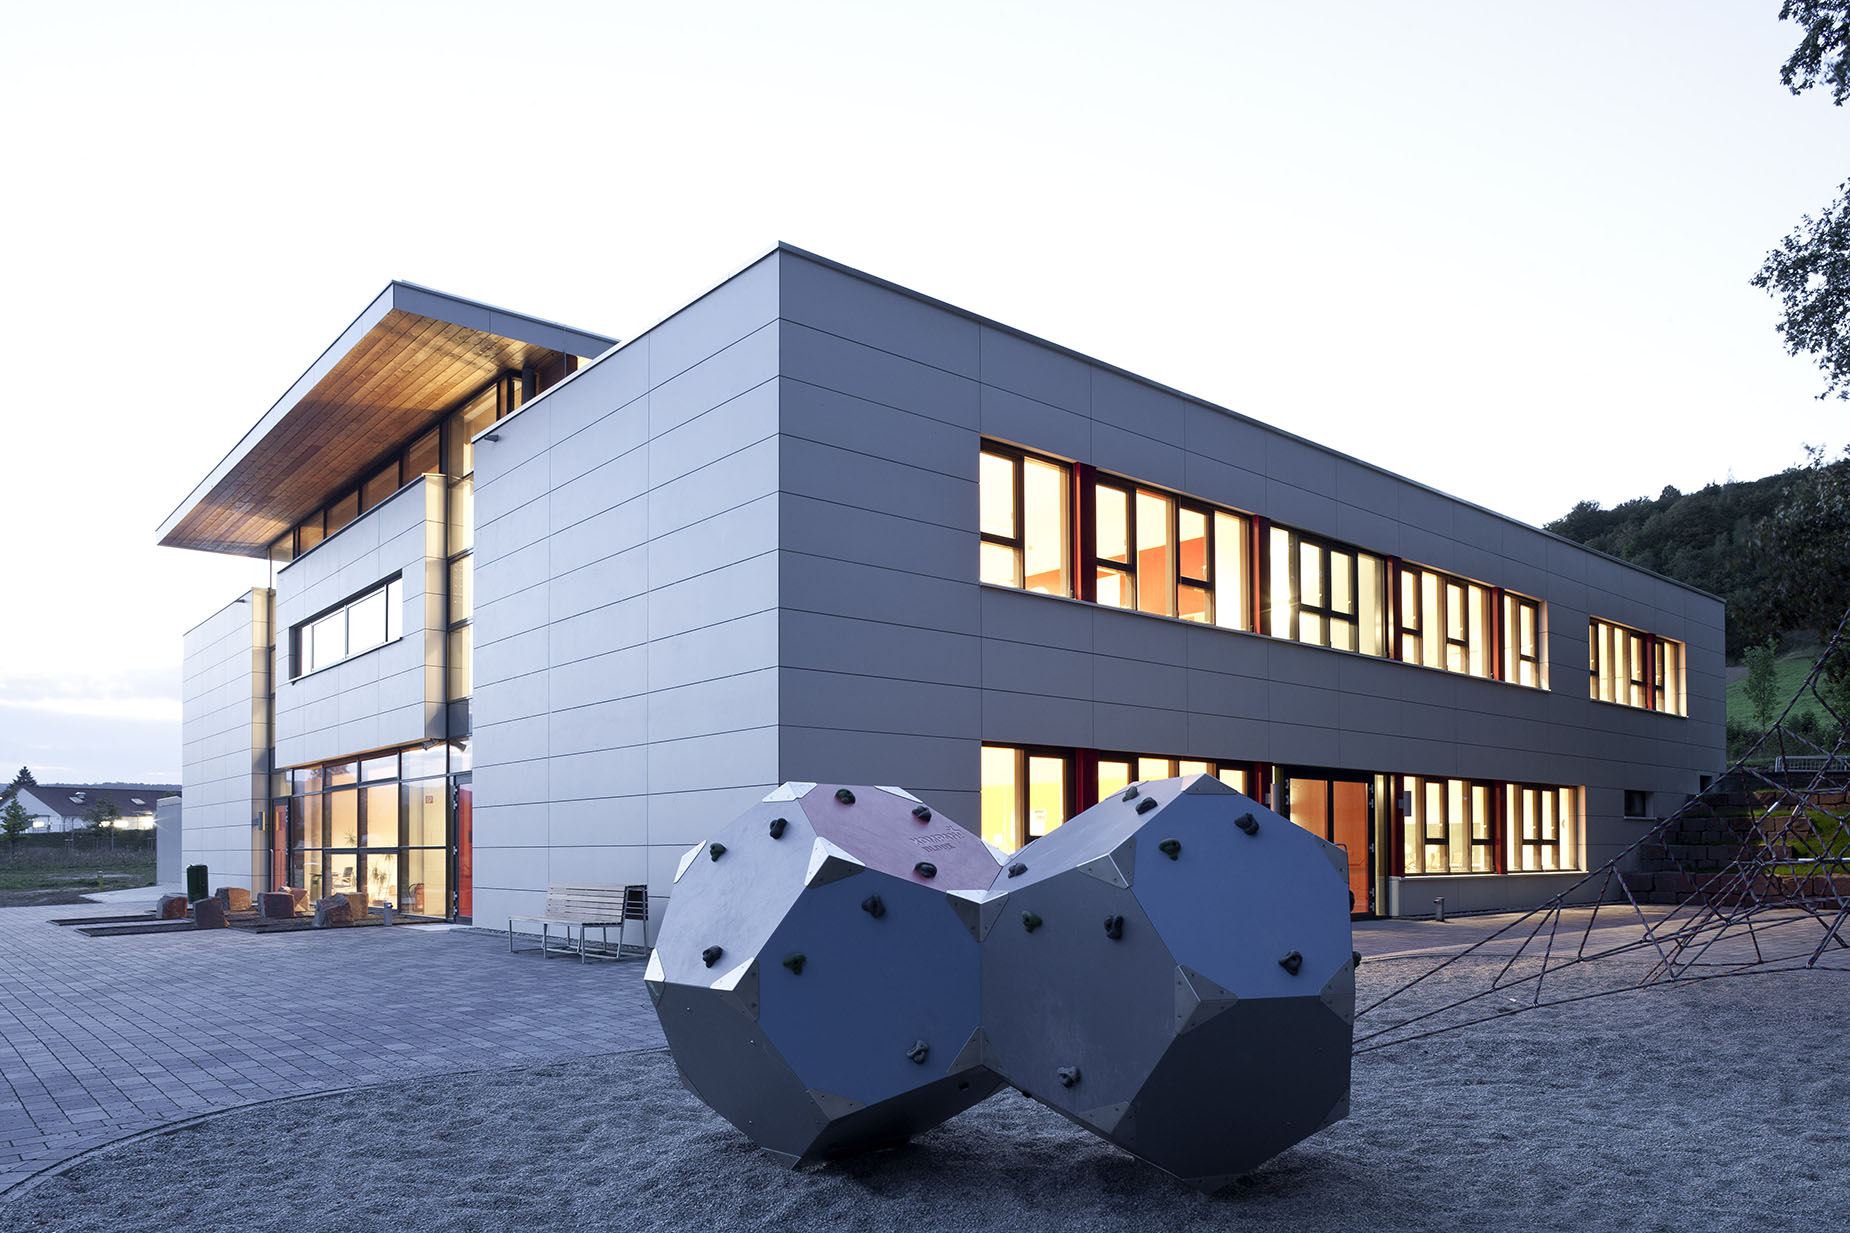 Neubau eines Gebäudes für die Paul-Gerhardt-Schule in Dassel